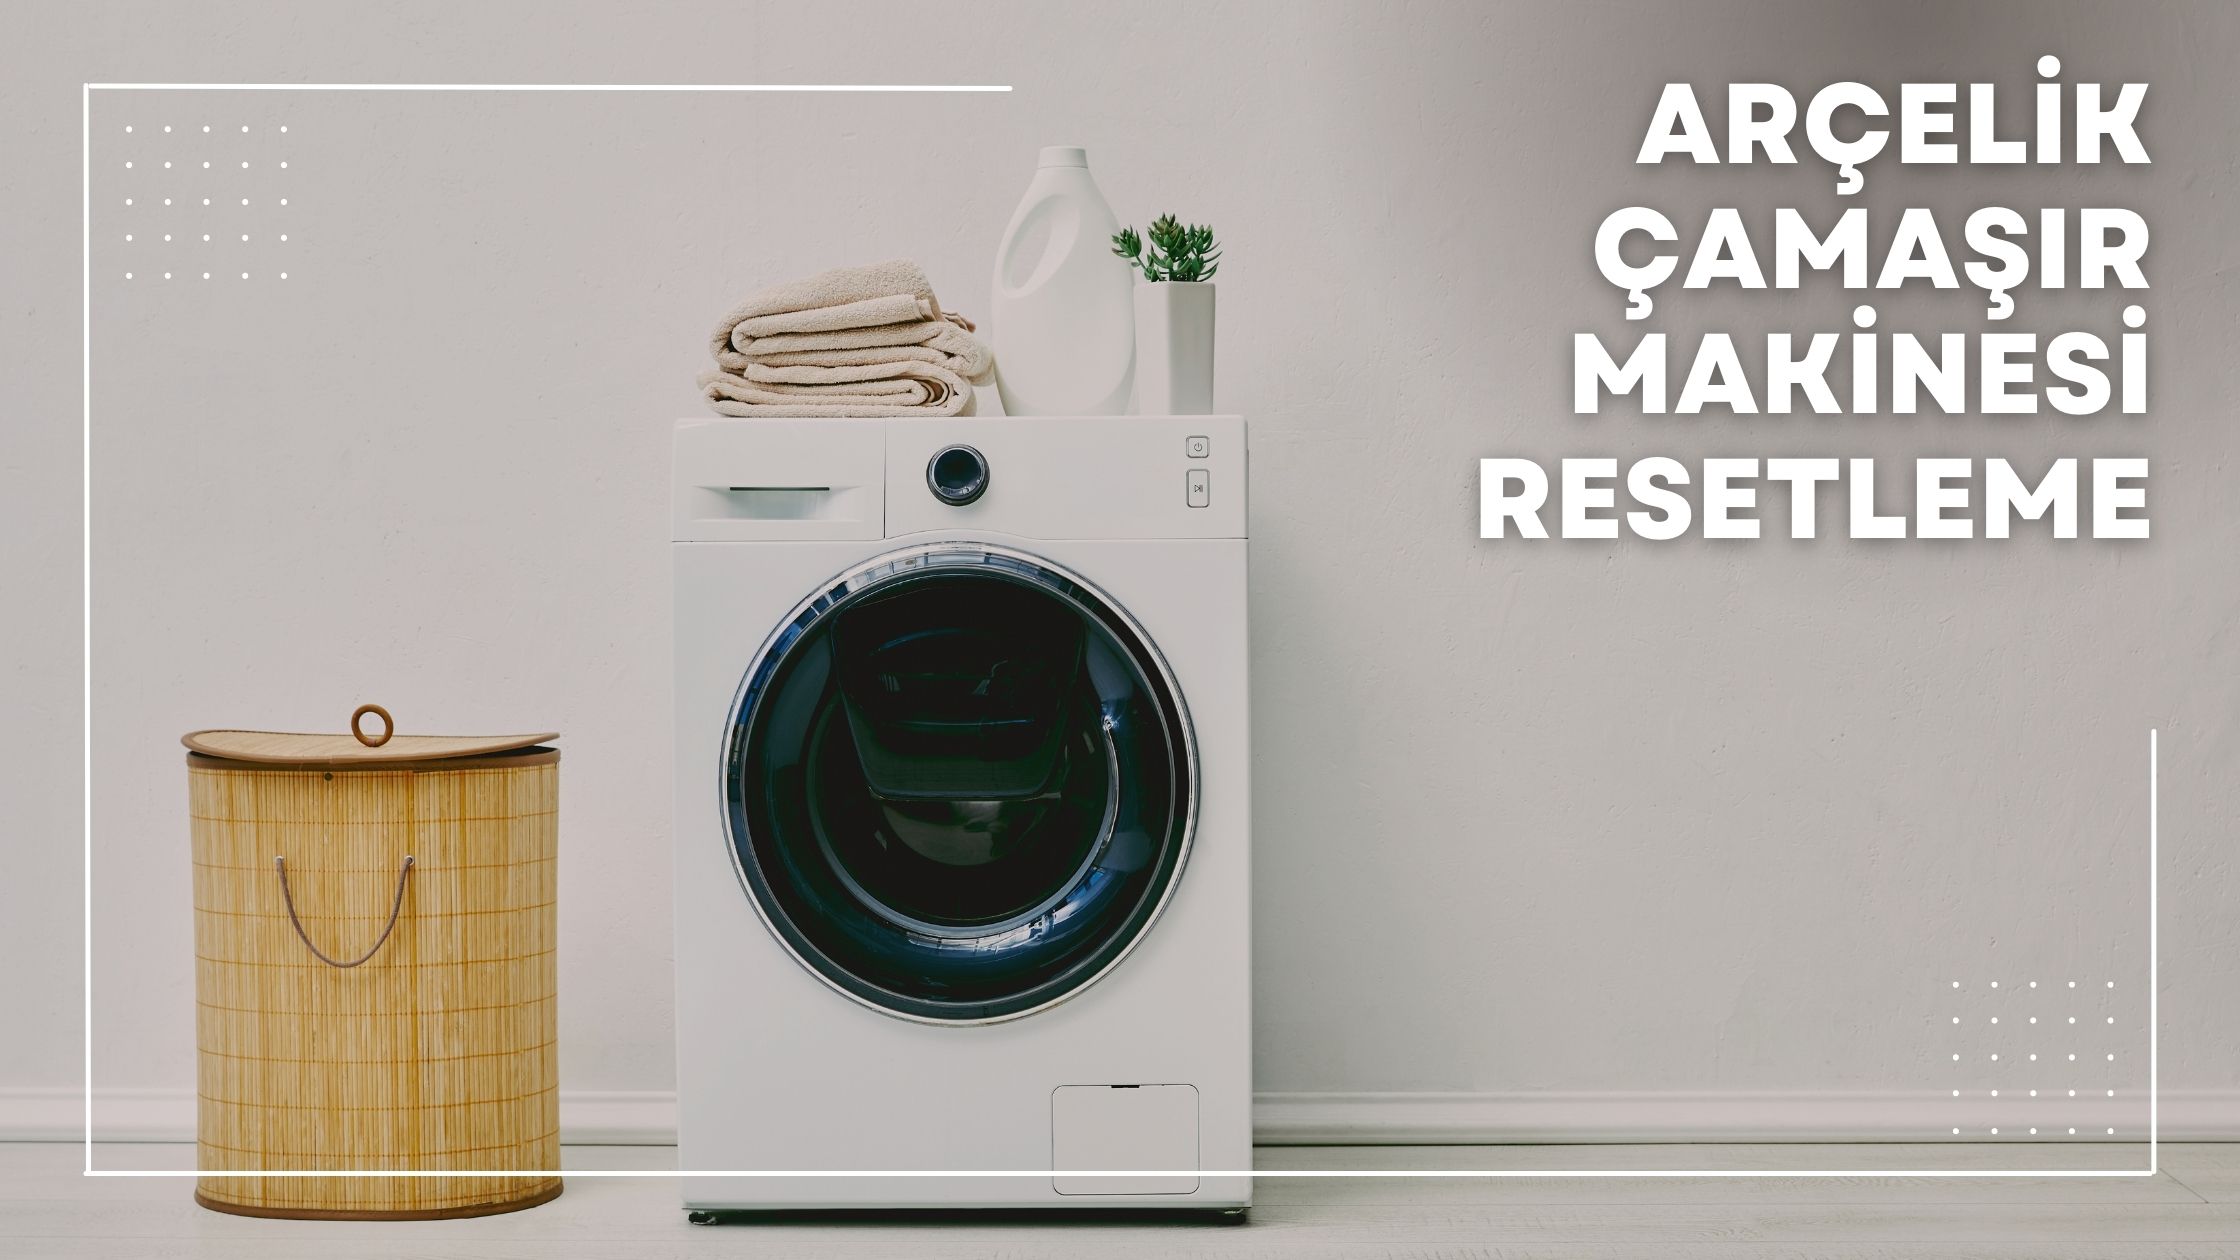 Arçelik Çamaşır Makinesi Resetleme